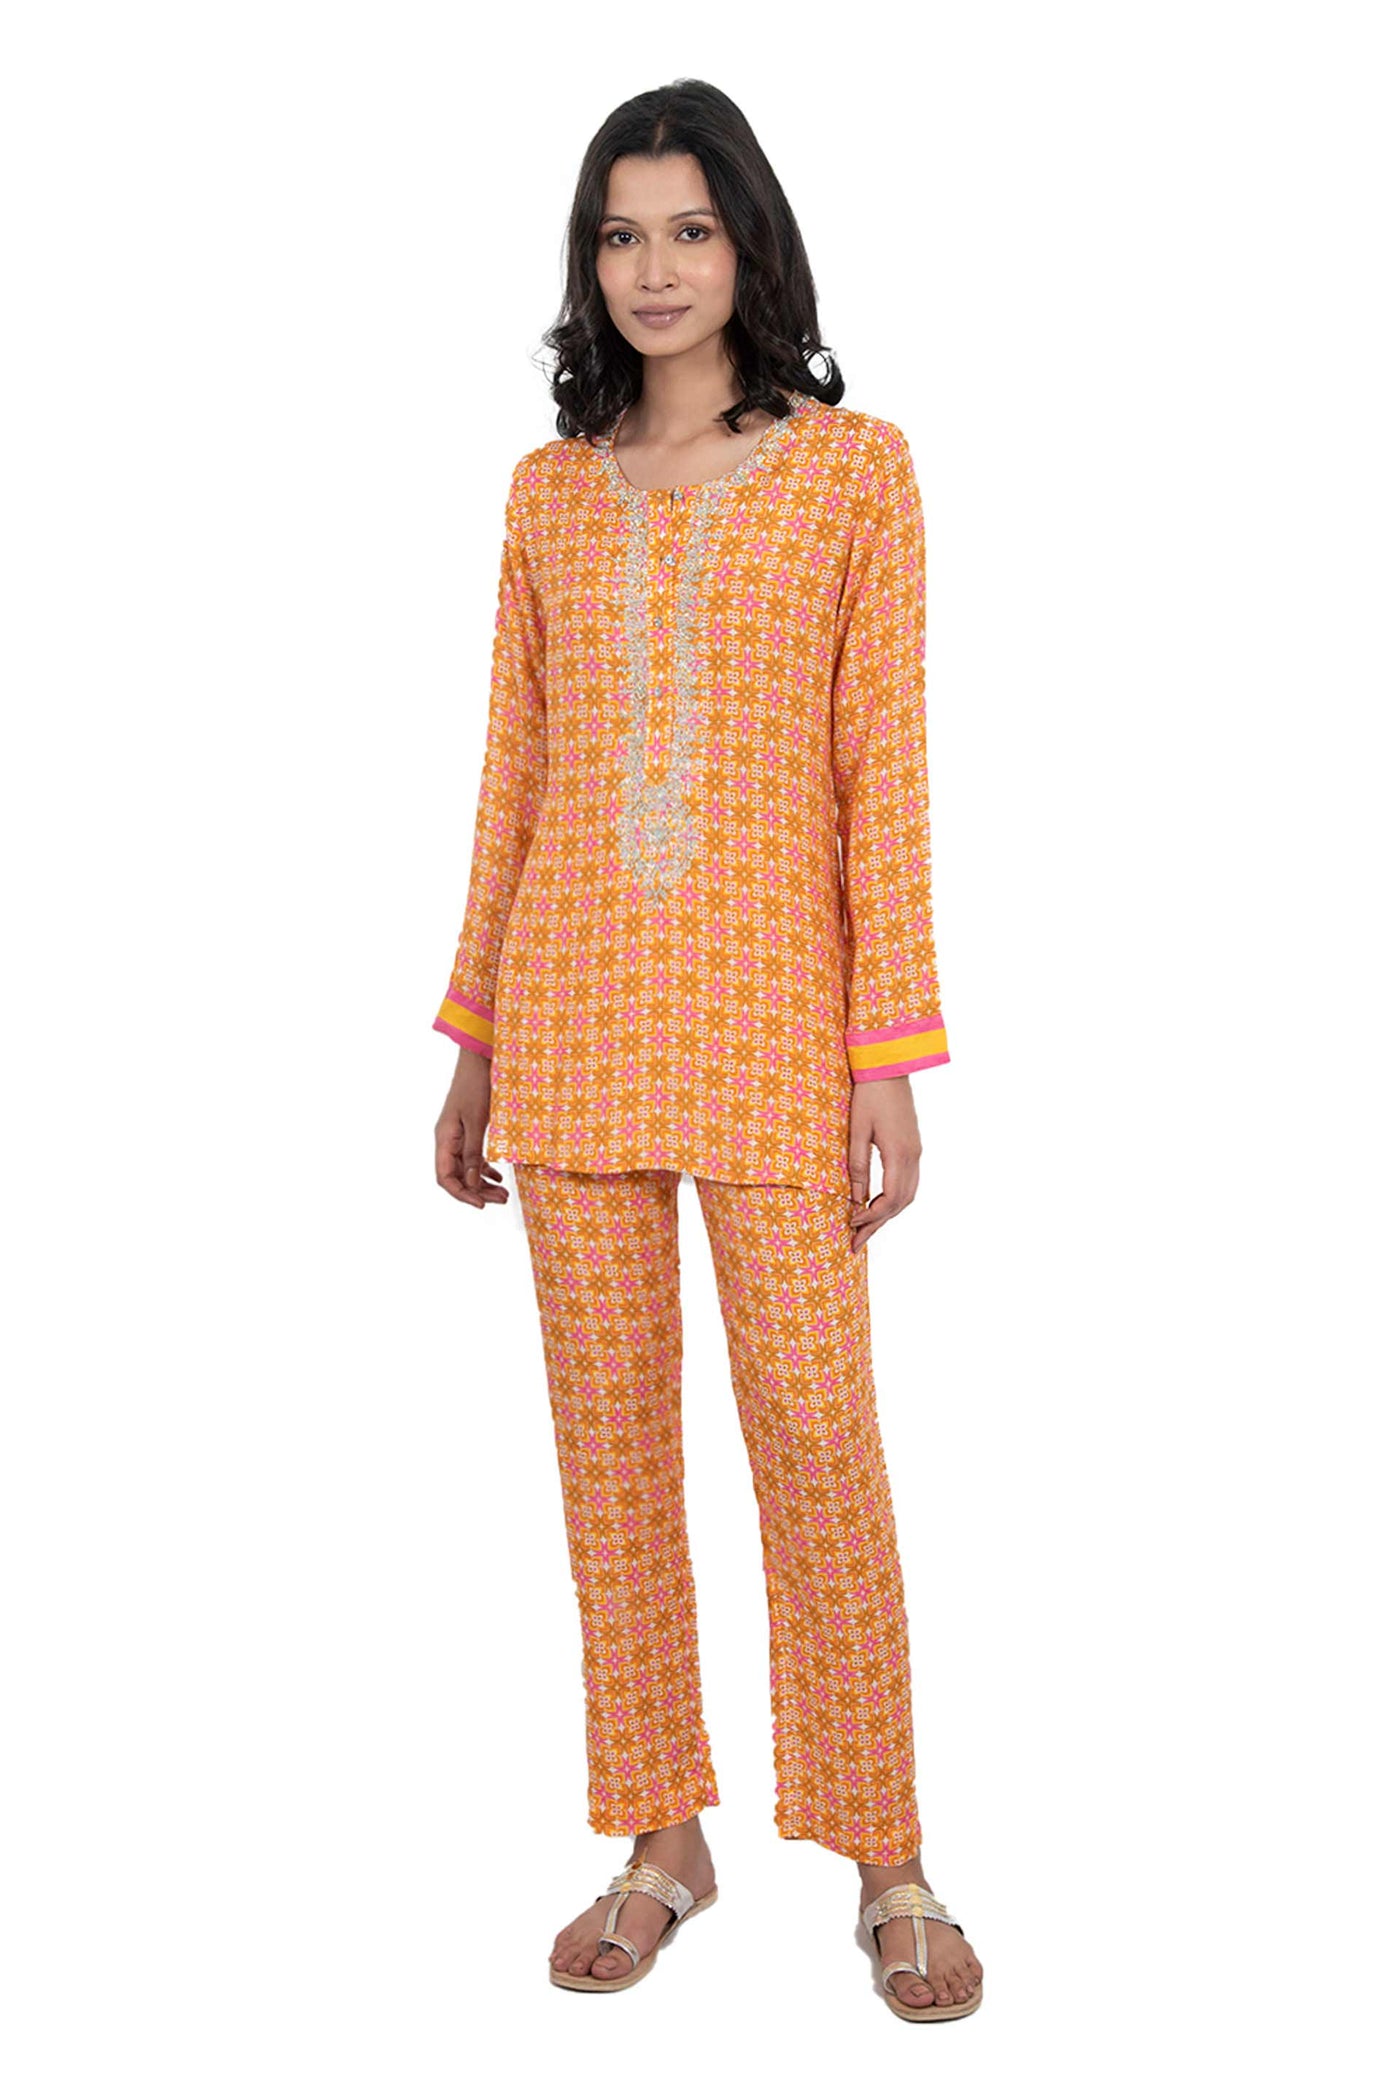 Monisha jaising Retro Set yellow online shopping melange singapore indian designer wear